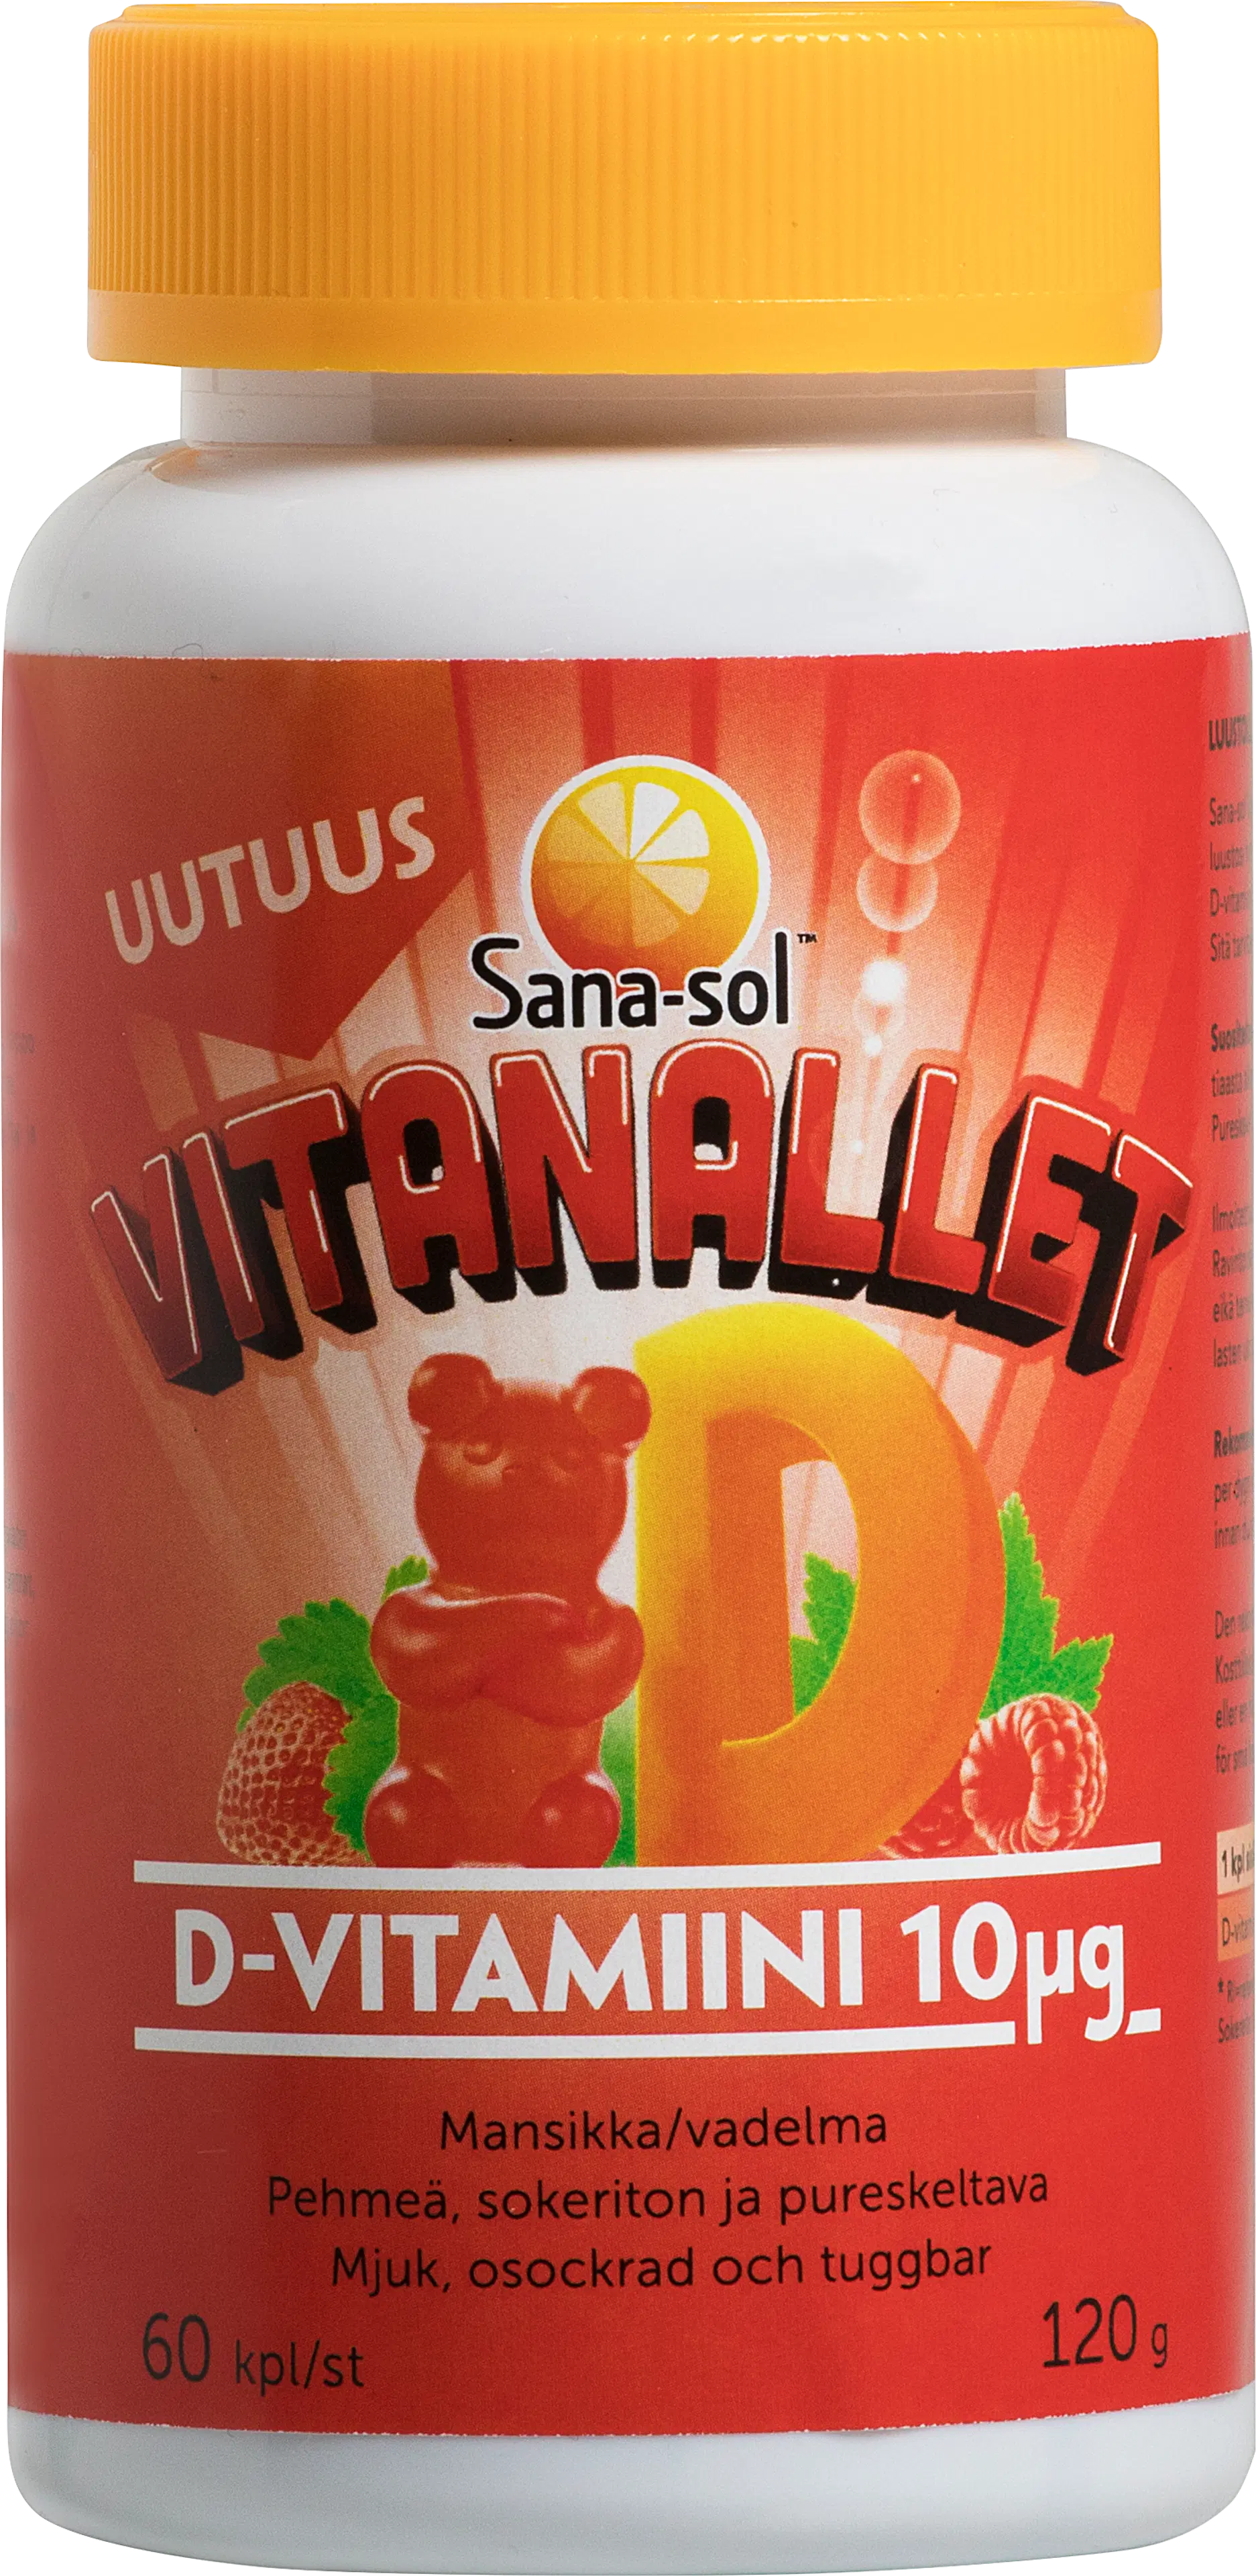 Sana-sol Vitanallet D-vitamiini 10µg Mansikka/vadelma pehmeä, sokeriton ja pureskeltava D-vitamiinivalmiste 60kpl